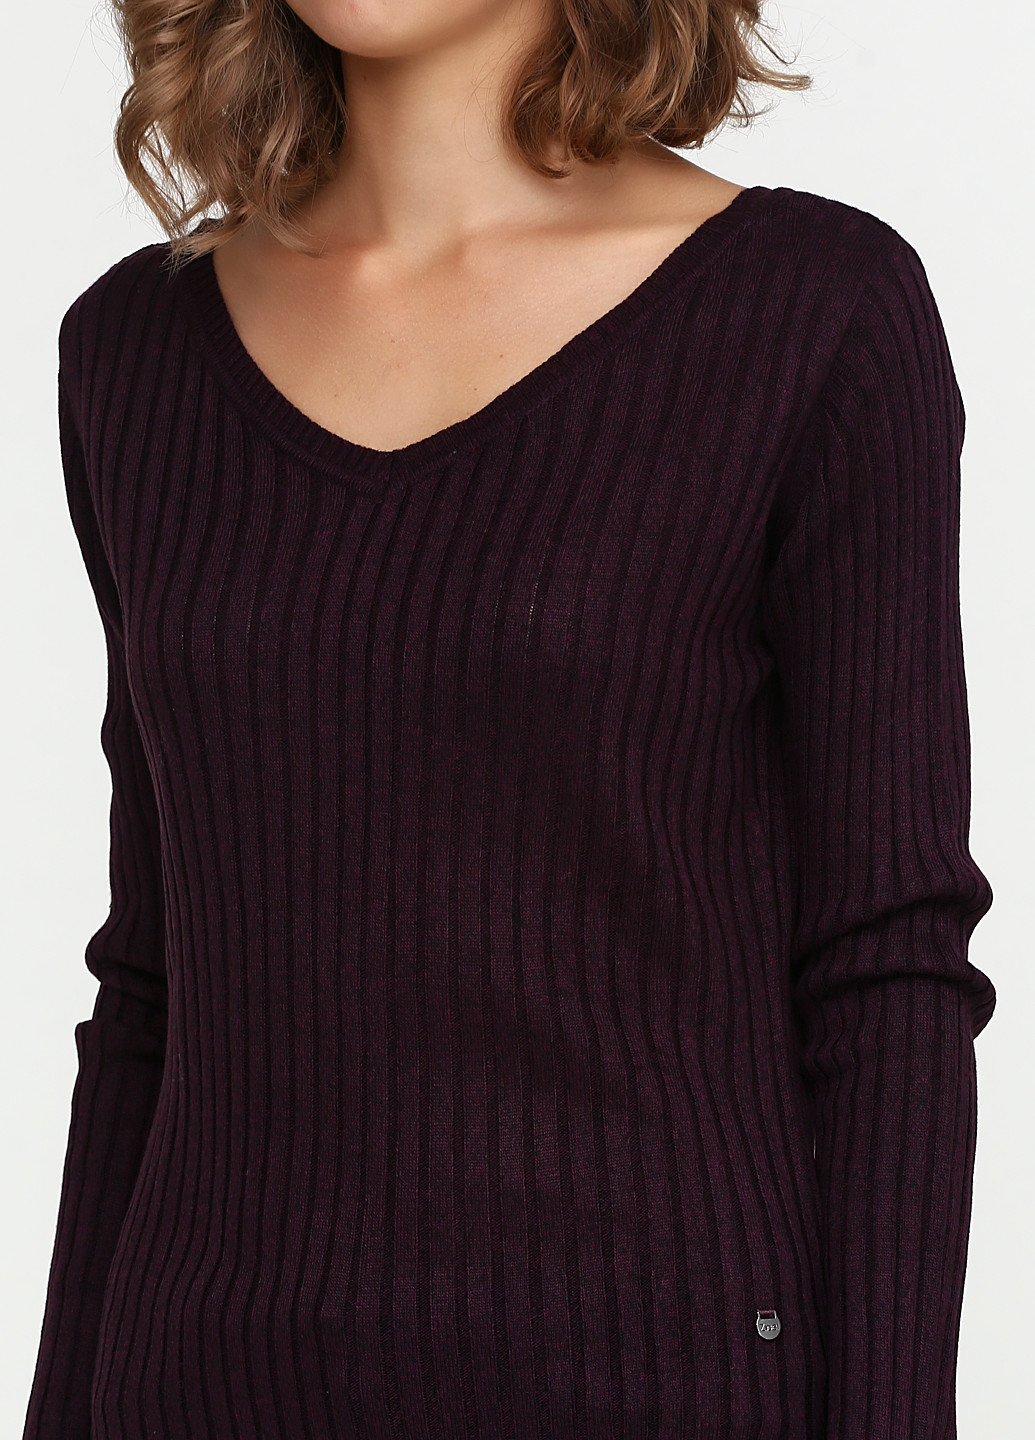 Темно-бордовый демисезонный пуловер пуловер Basic